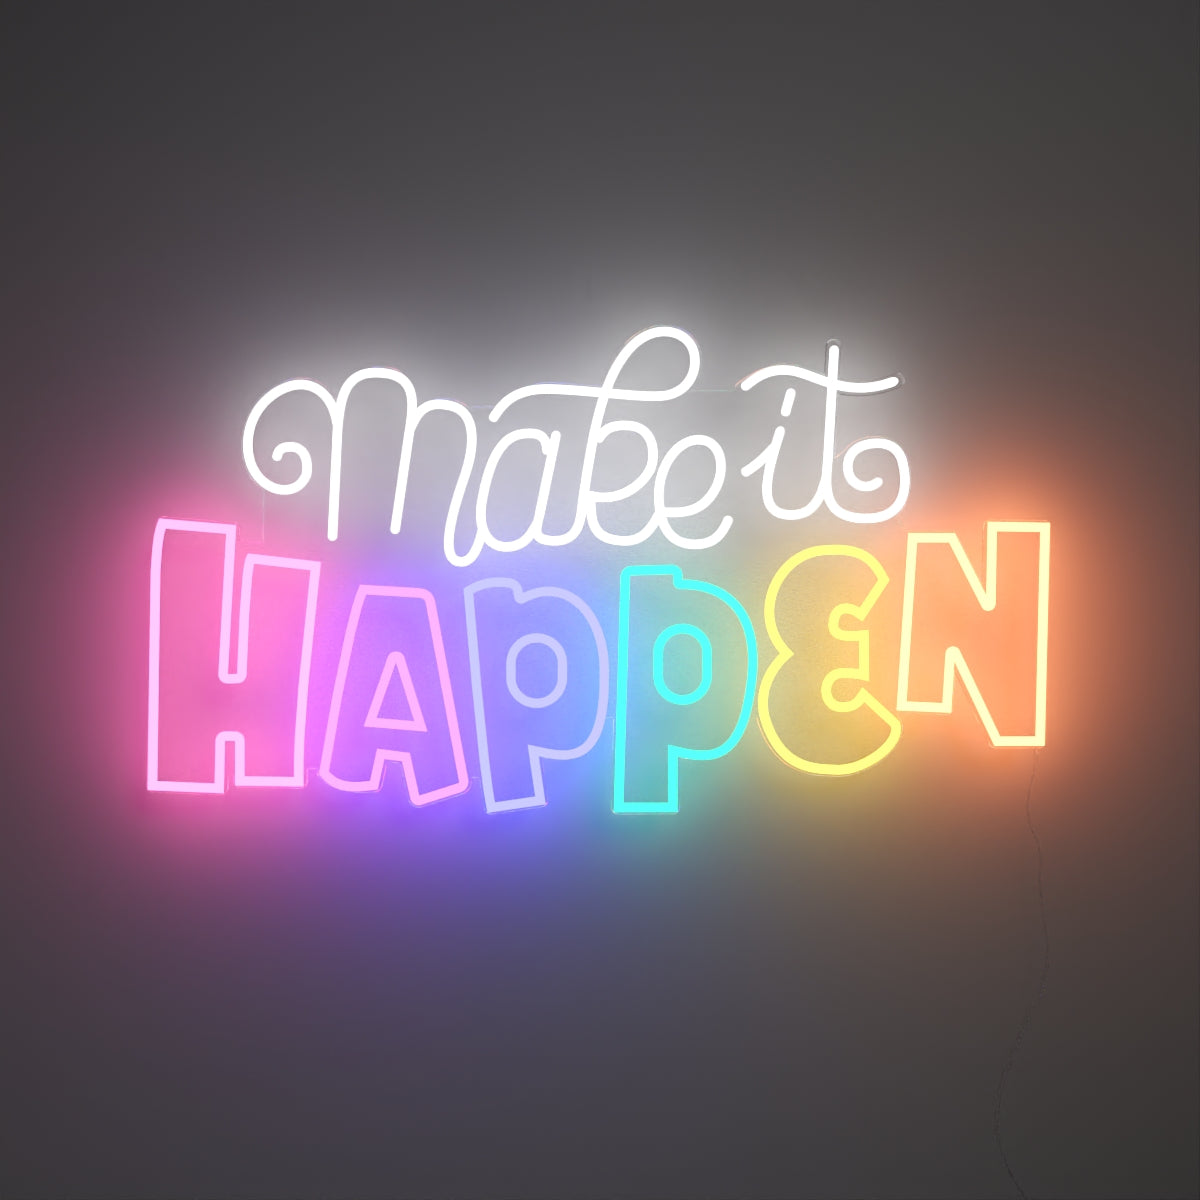 Make it happen by Joanna Behar - Neon Tabela - Neonbir